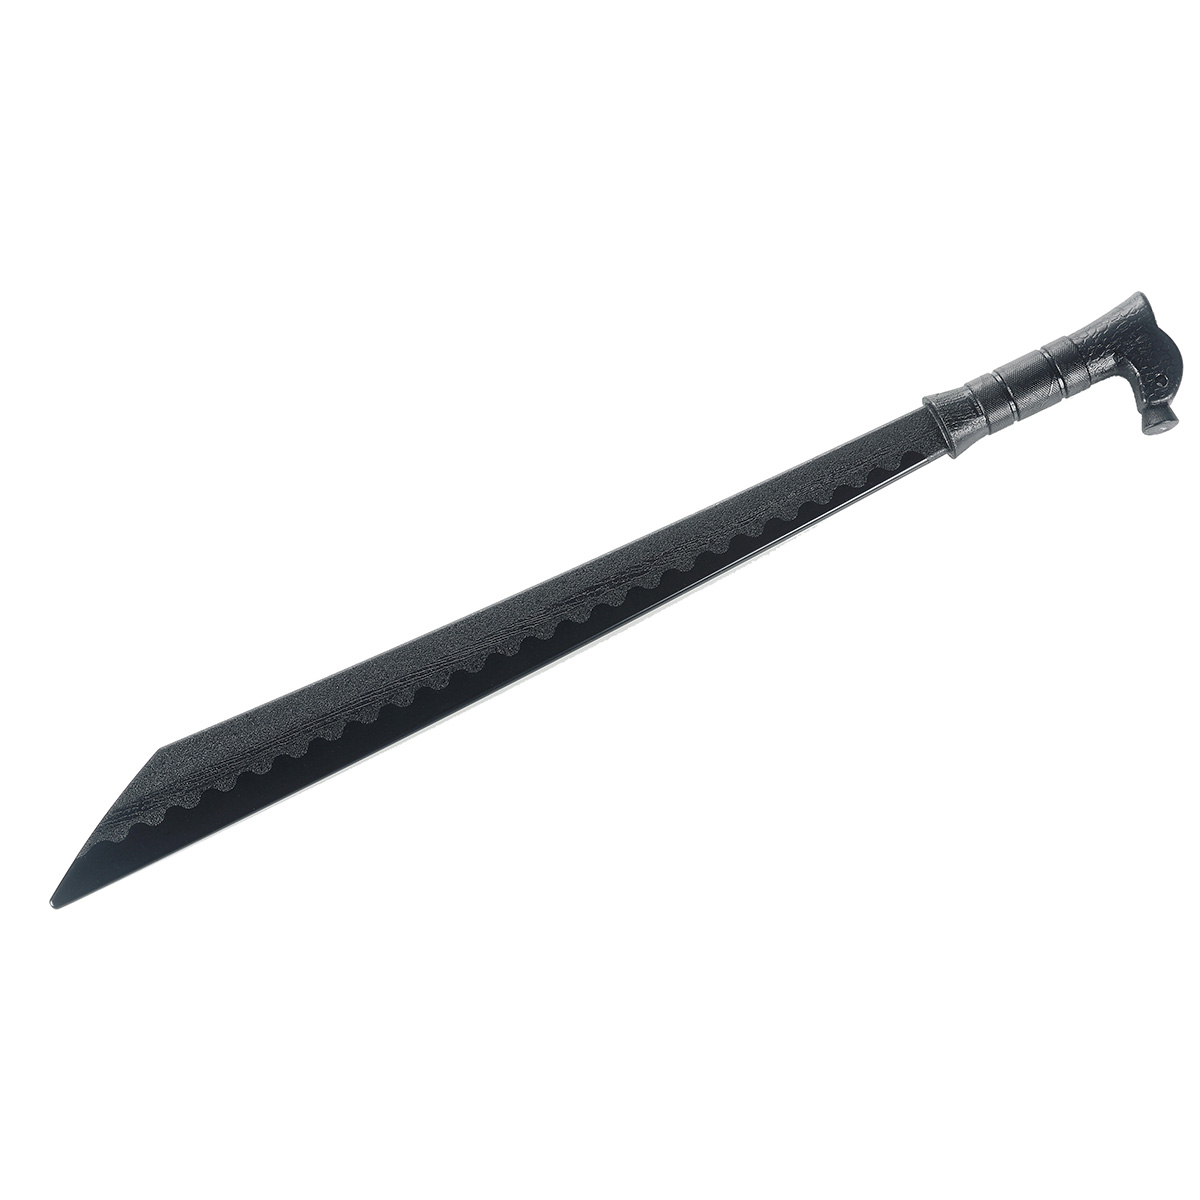 Black Polypropylene Dayak Mandau Sword - Click Image to Close